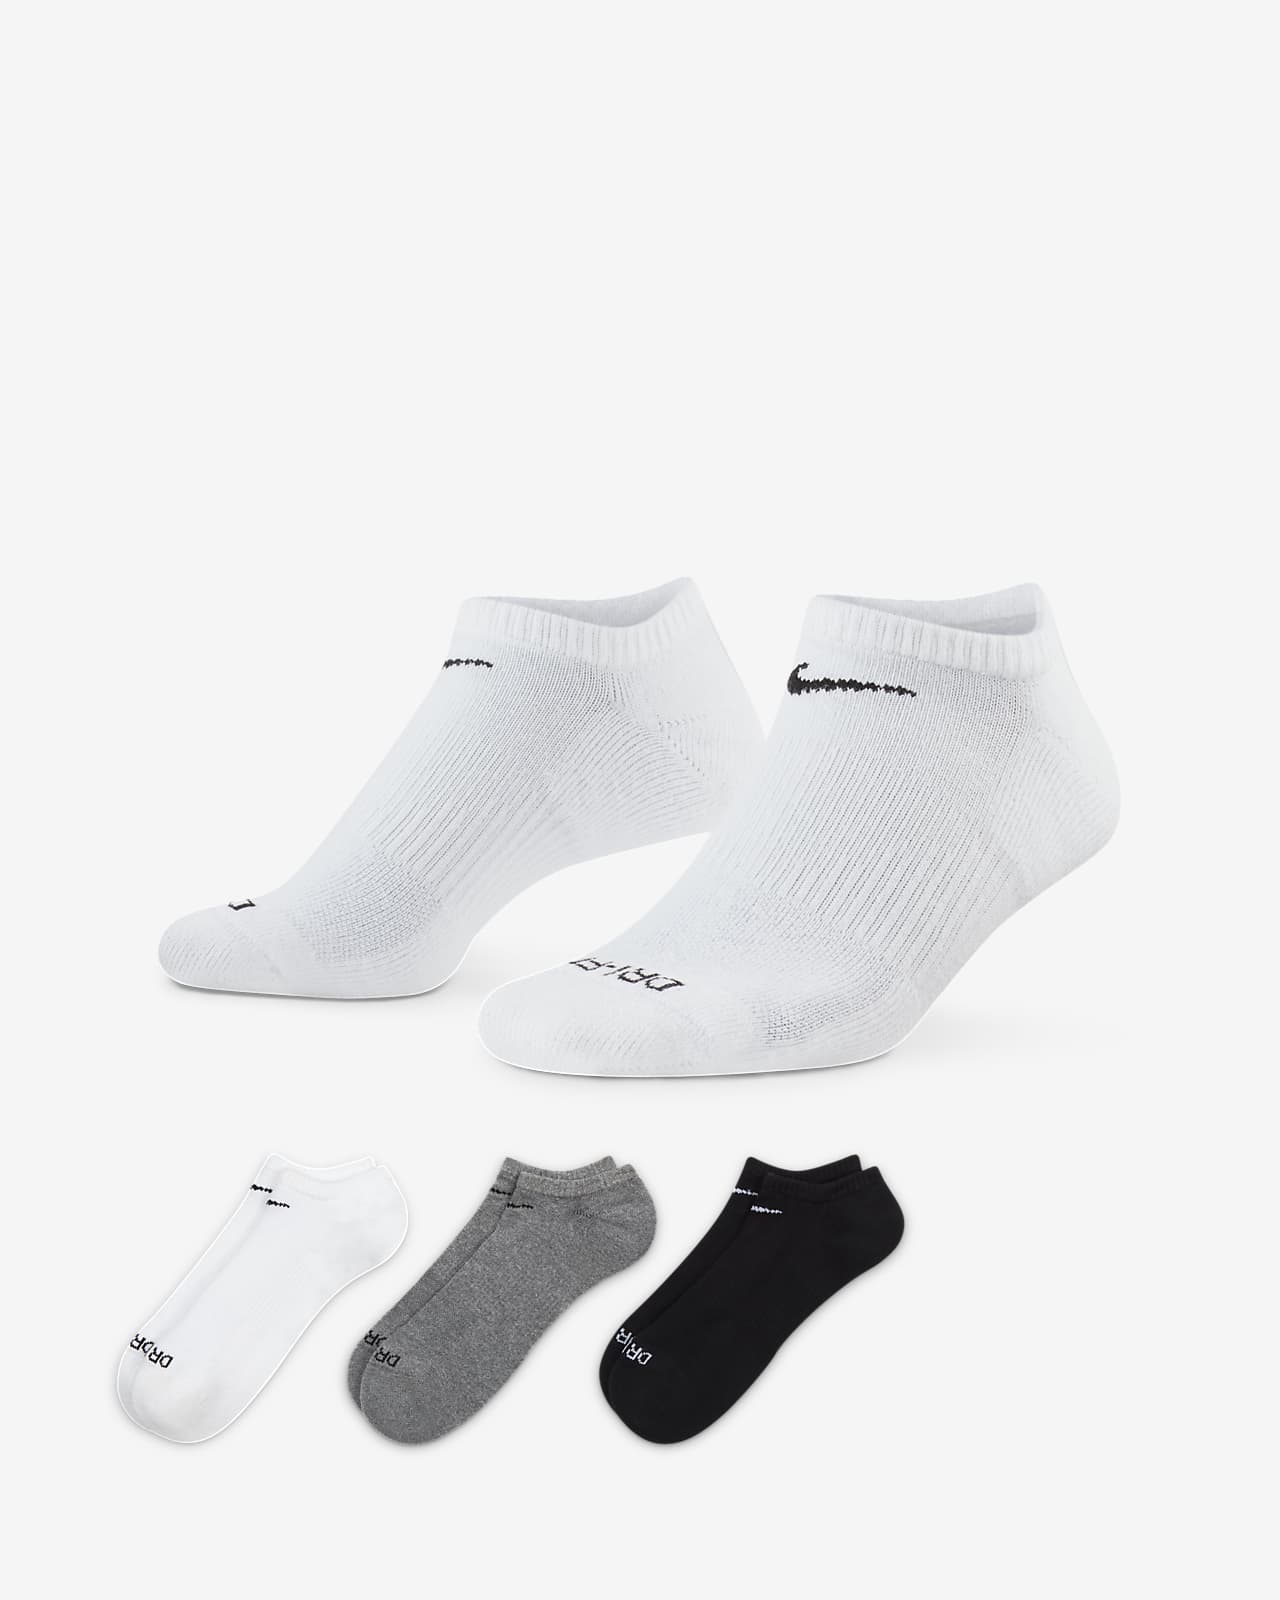 ถุงเท้าเทรนนิ่งแบบซ่อน Nike Everyday Plus Cushion (3 คู่)